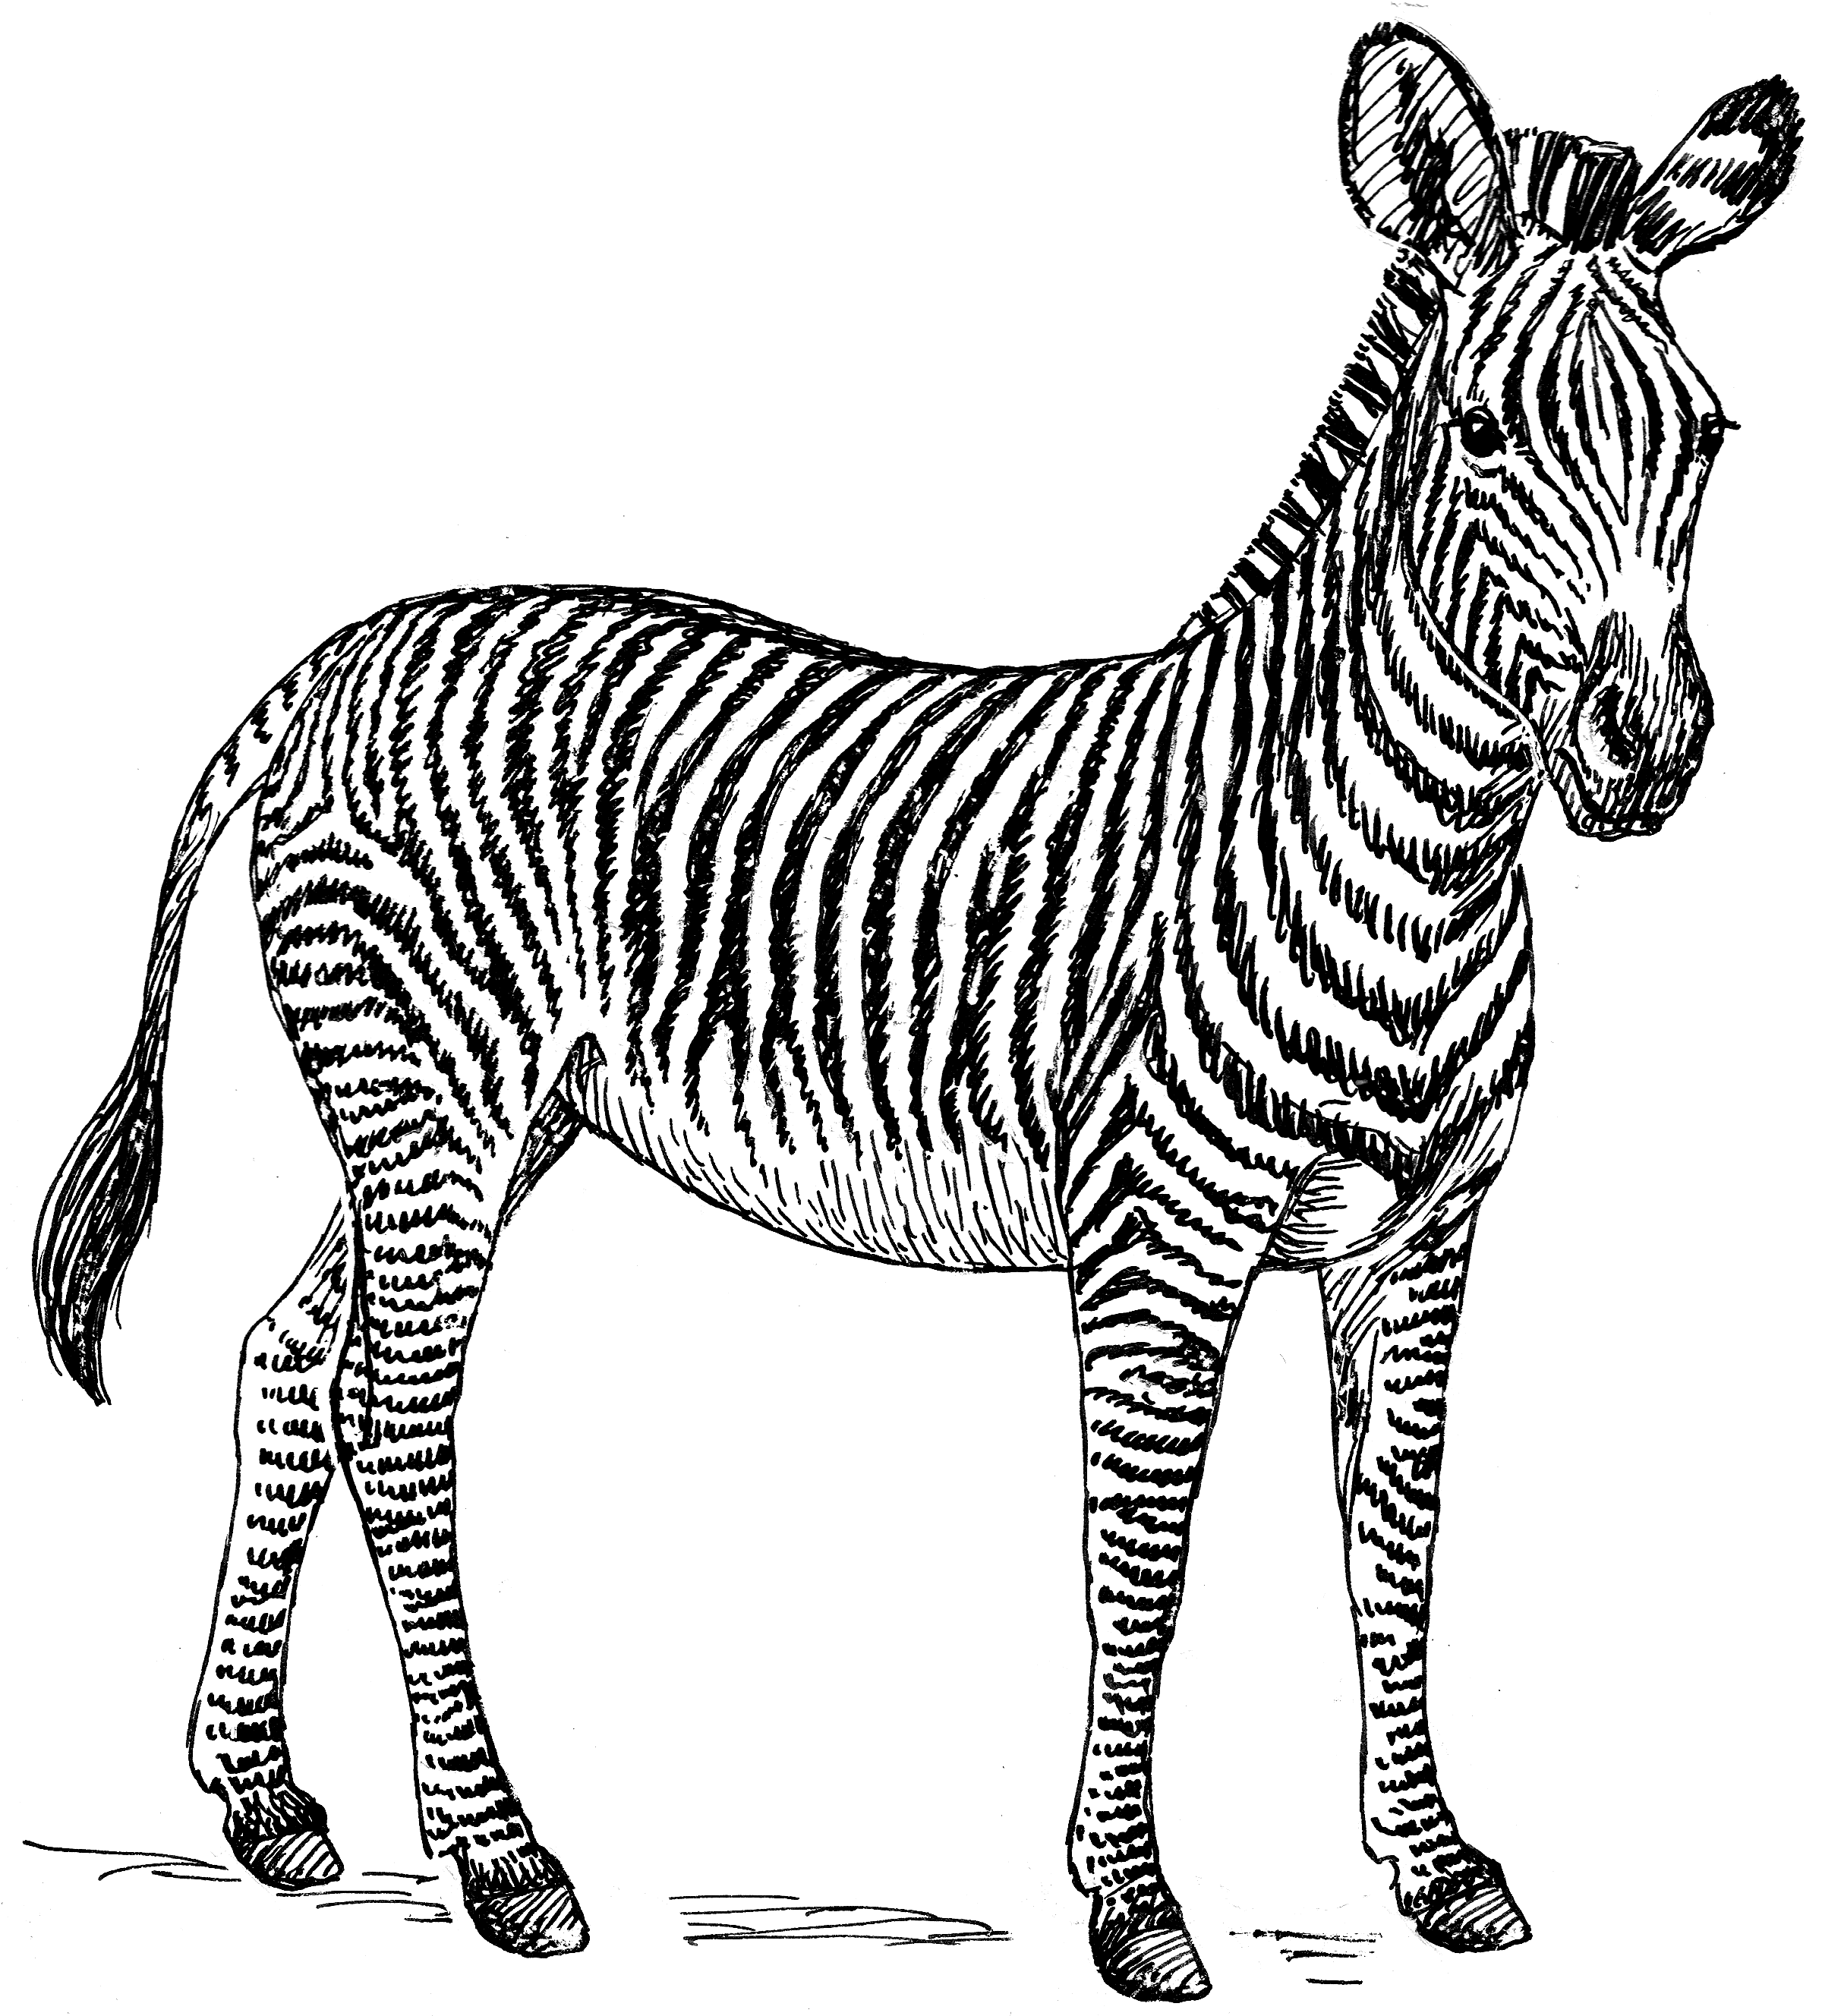 Zebra_(PSF)